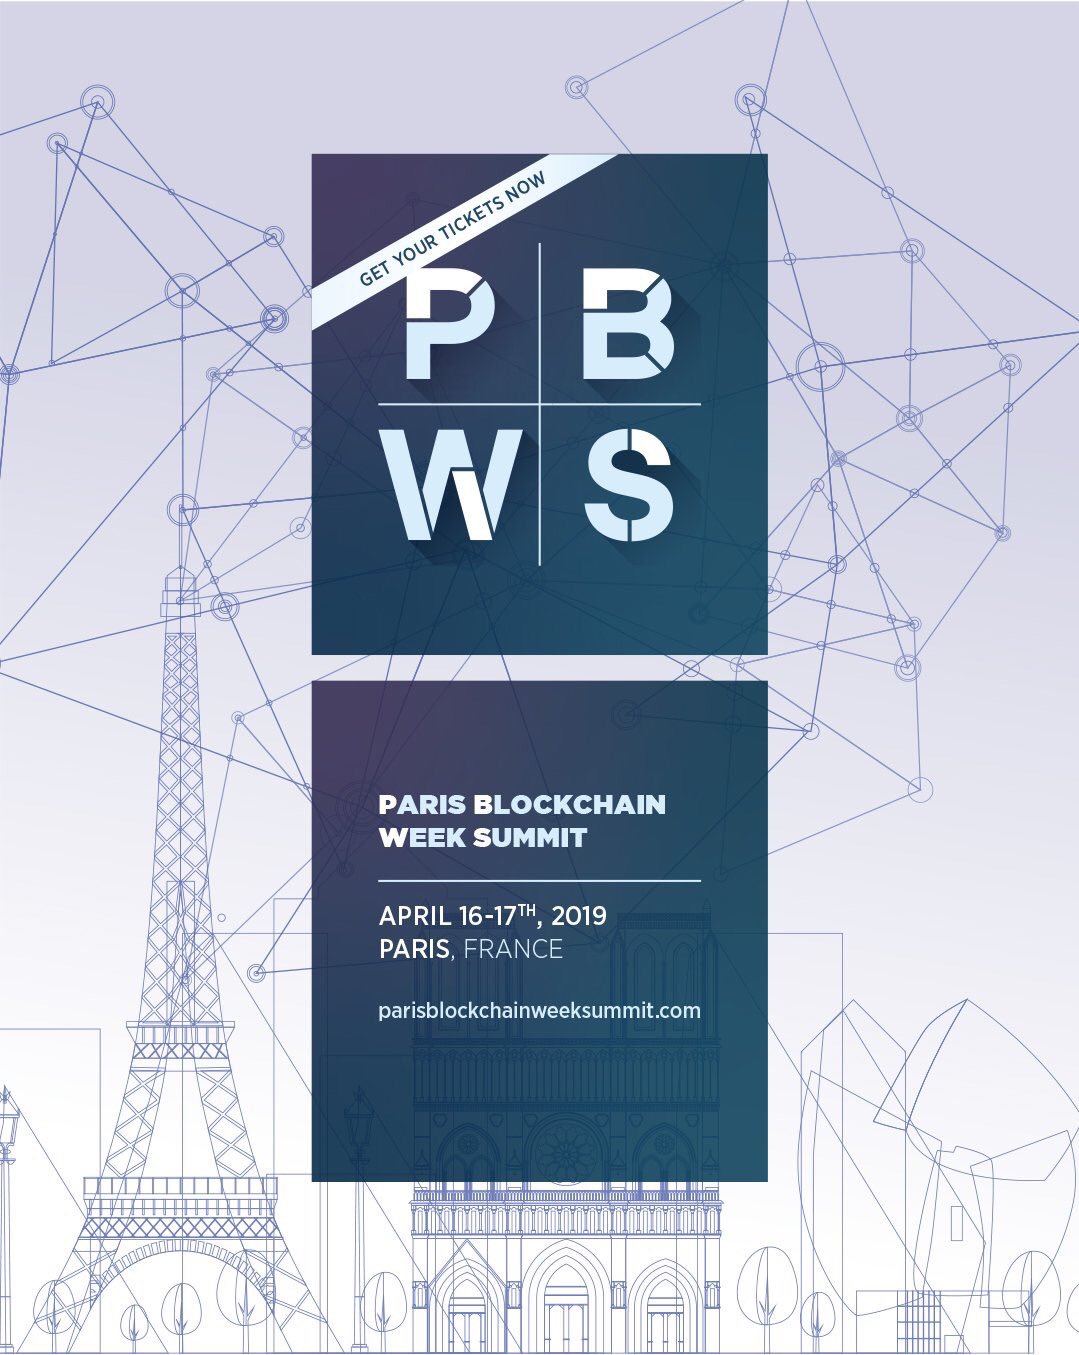 Paris Blockchain Week Summit 2019